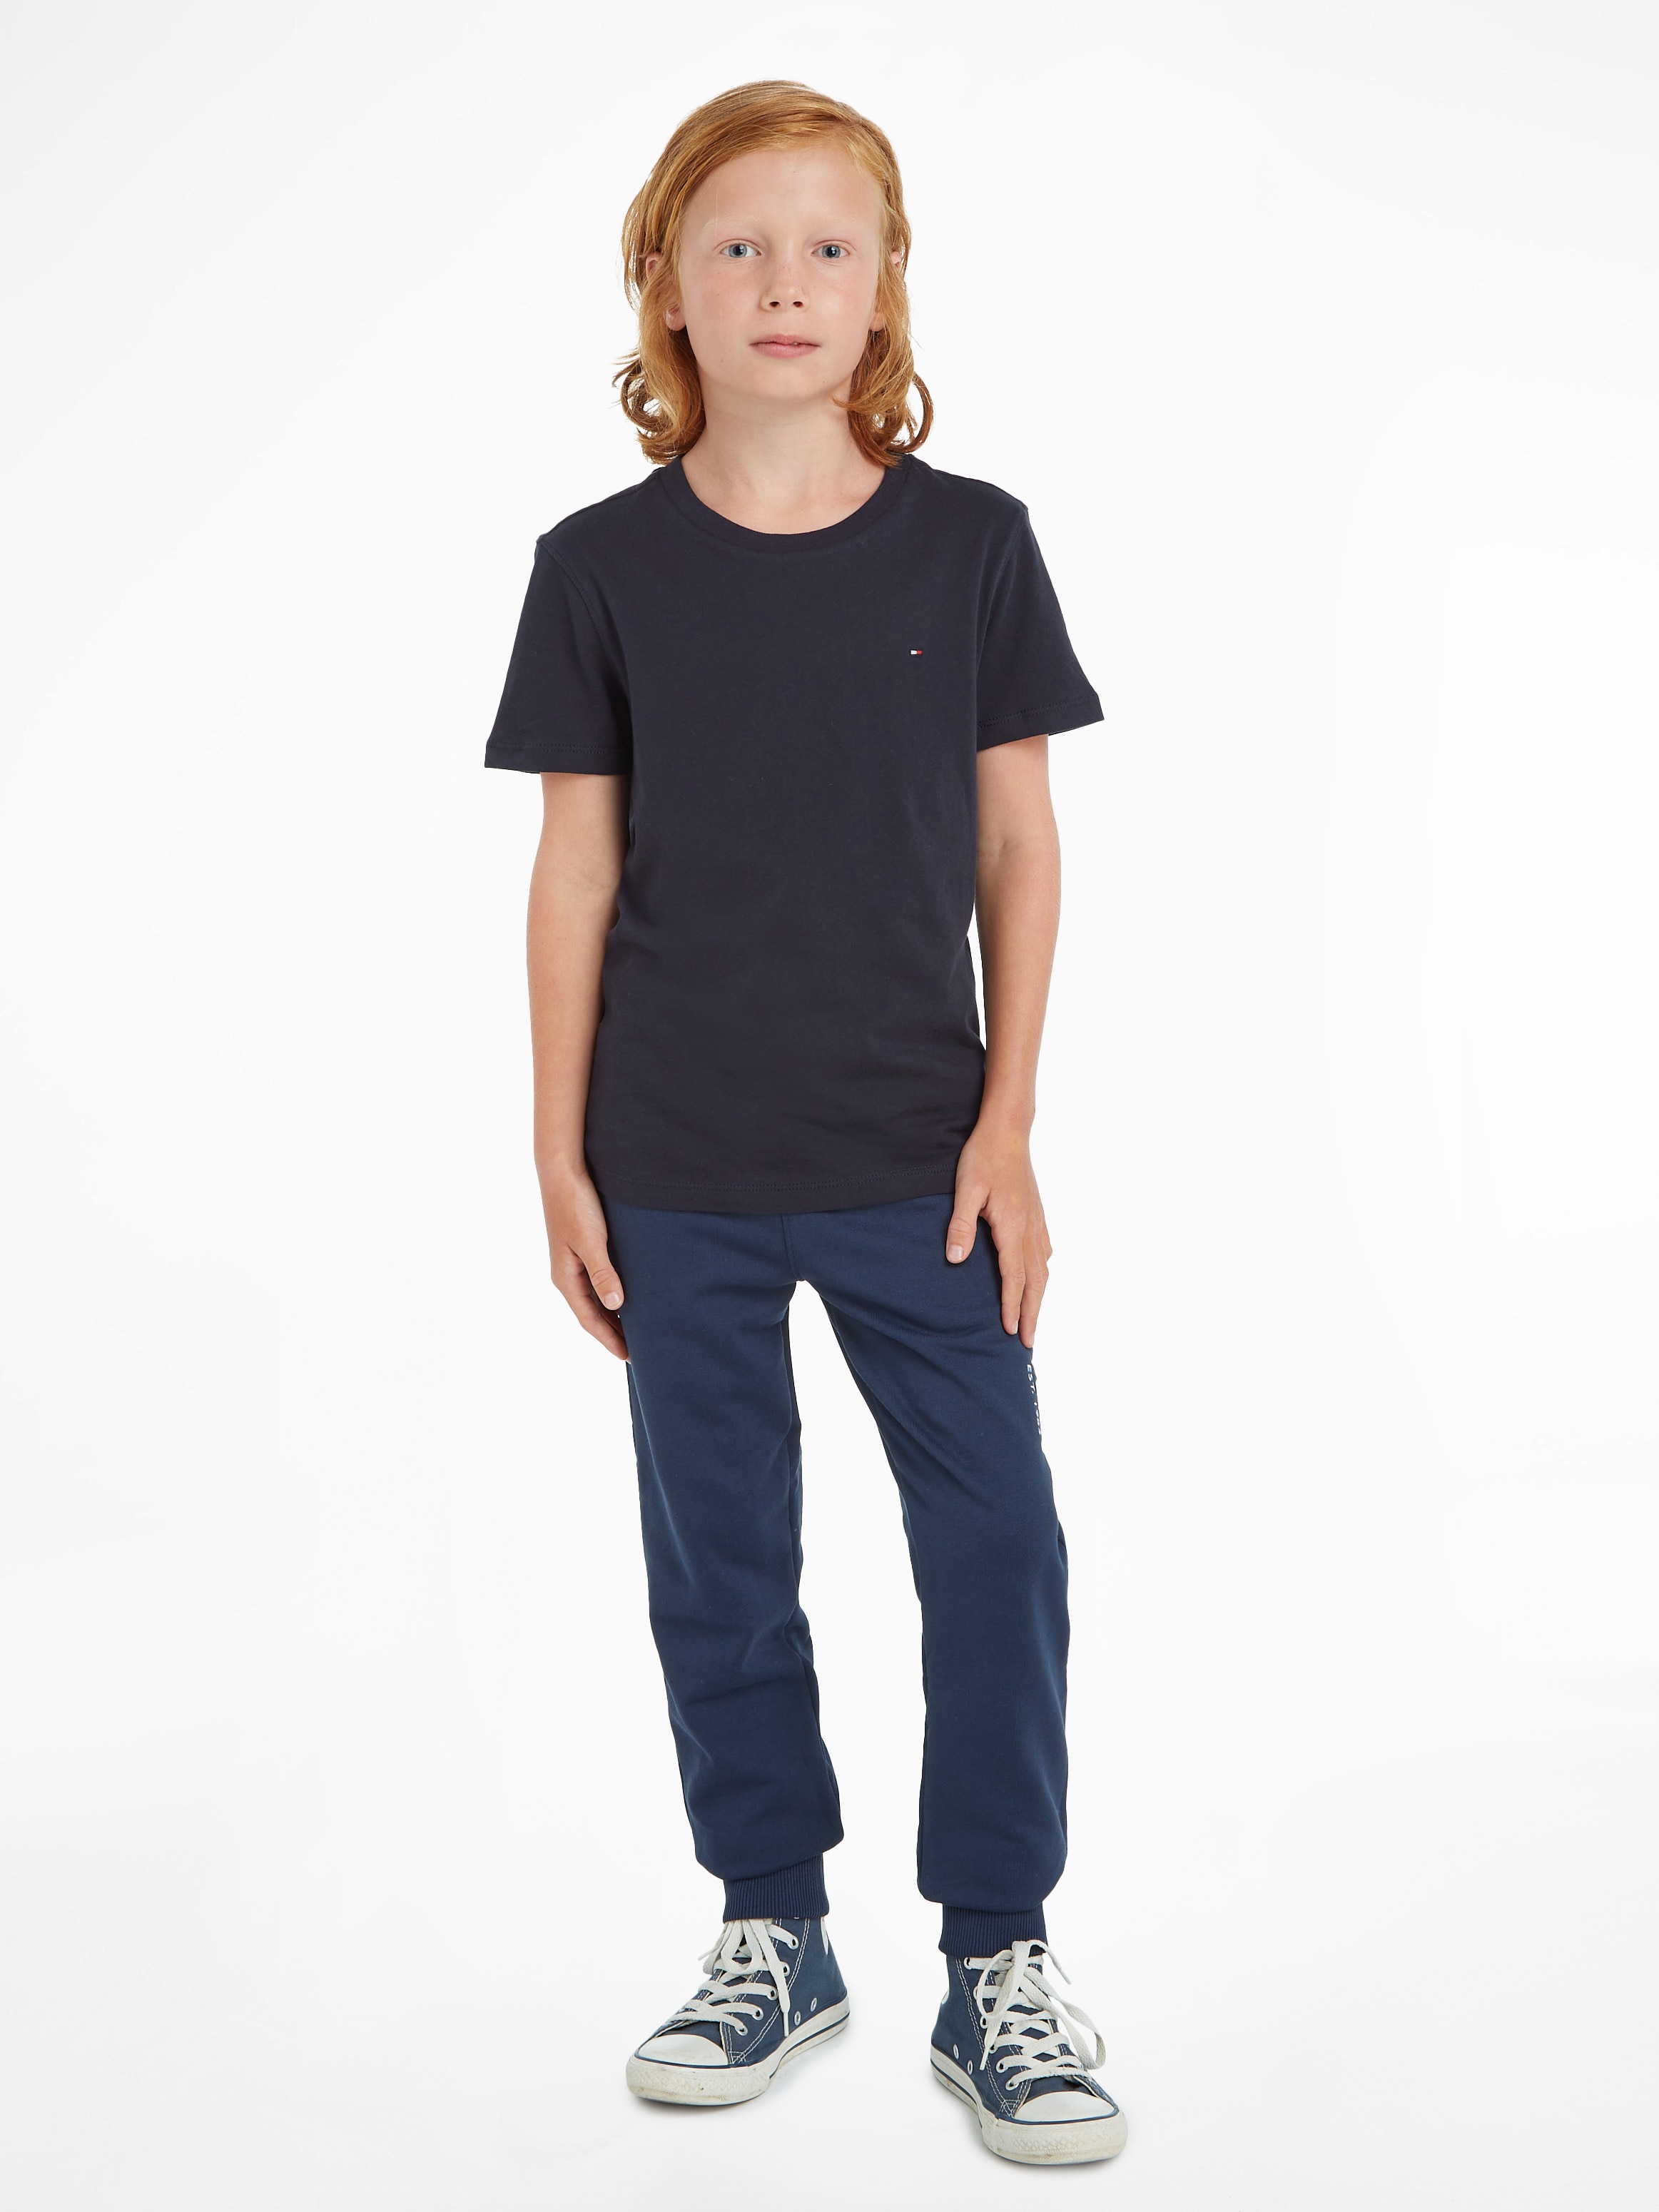 Tommy Hilfiger bei CN Junior MiniMe,für Jungen BASIC »BOYS Kids Kinder KNIT«, T-Shirt